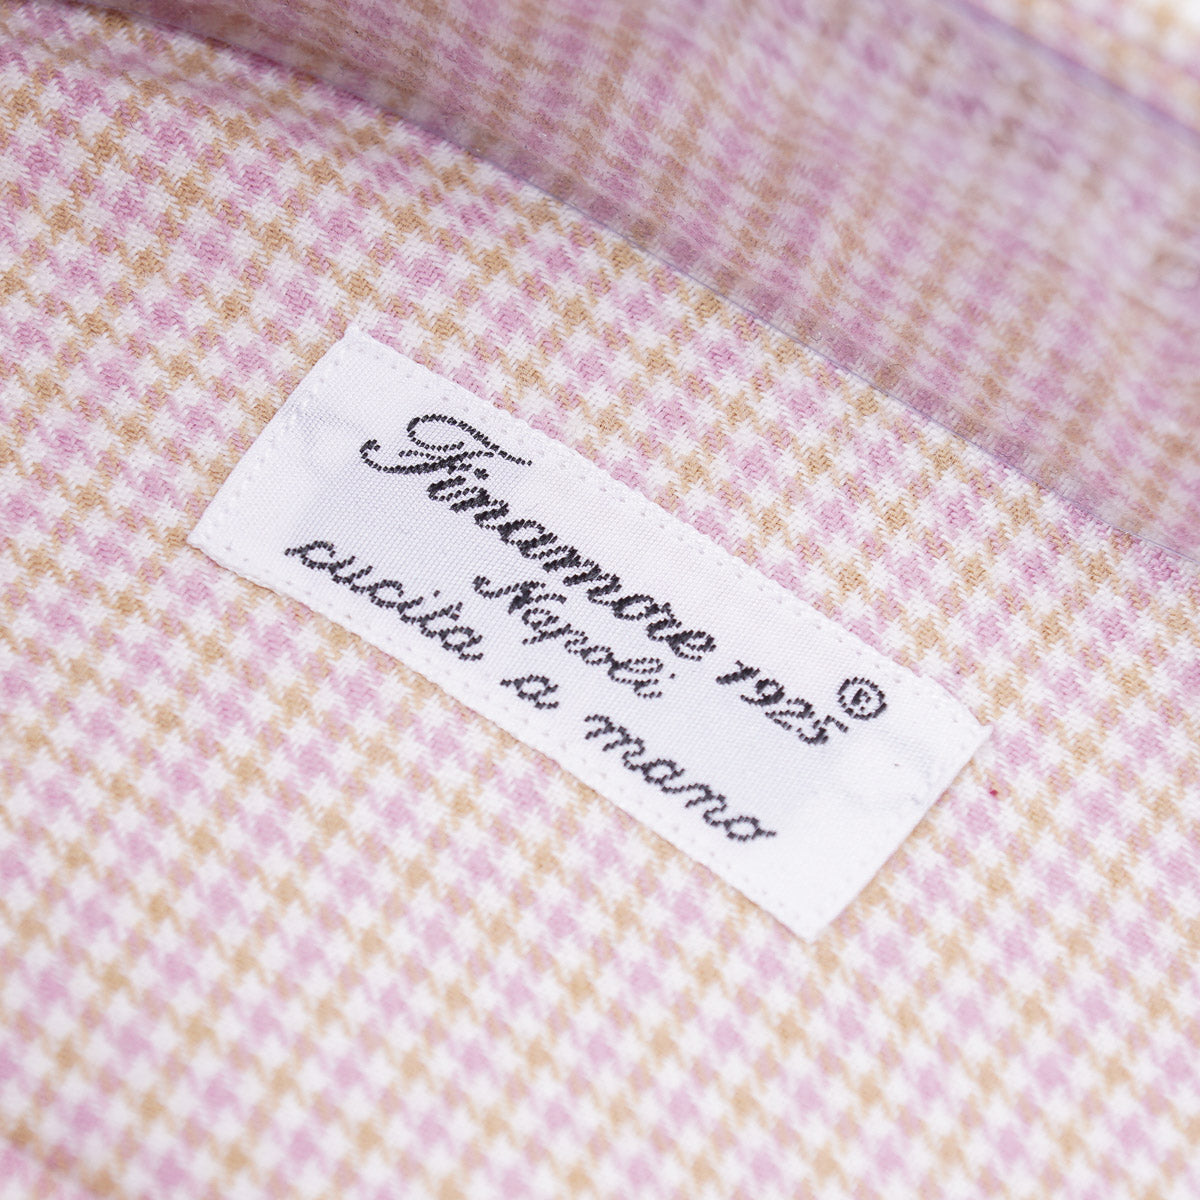 Finamore Extra-Soft Cashmere Cotton Shirt - Top Shelf Apparel